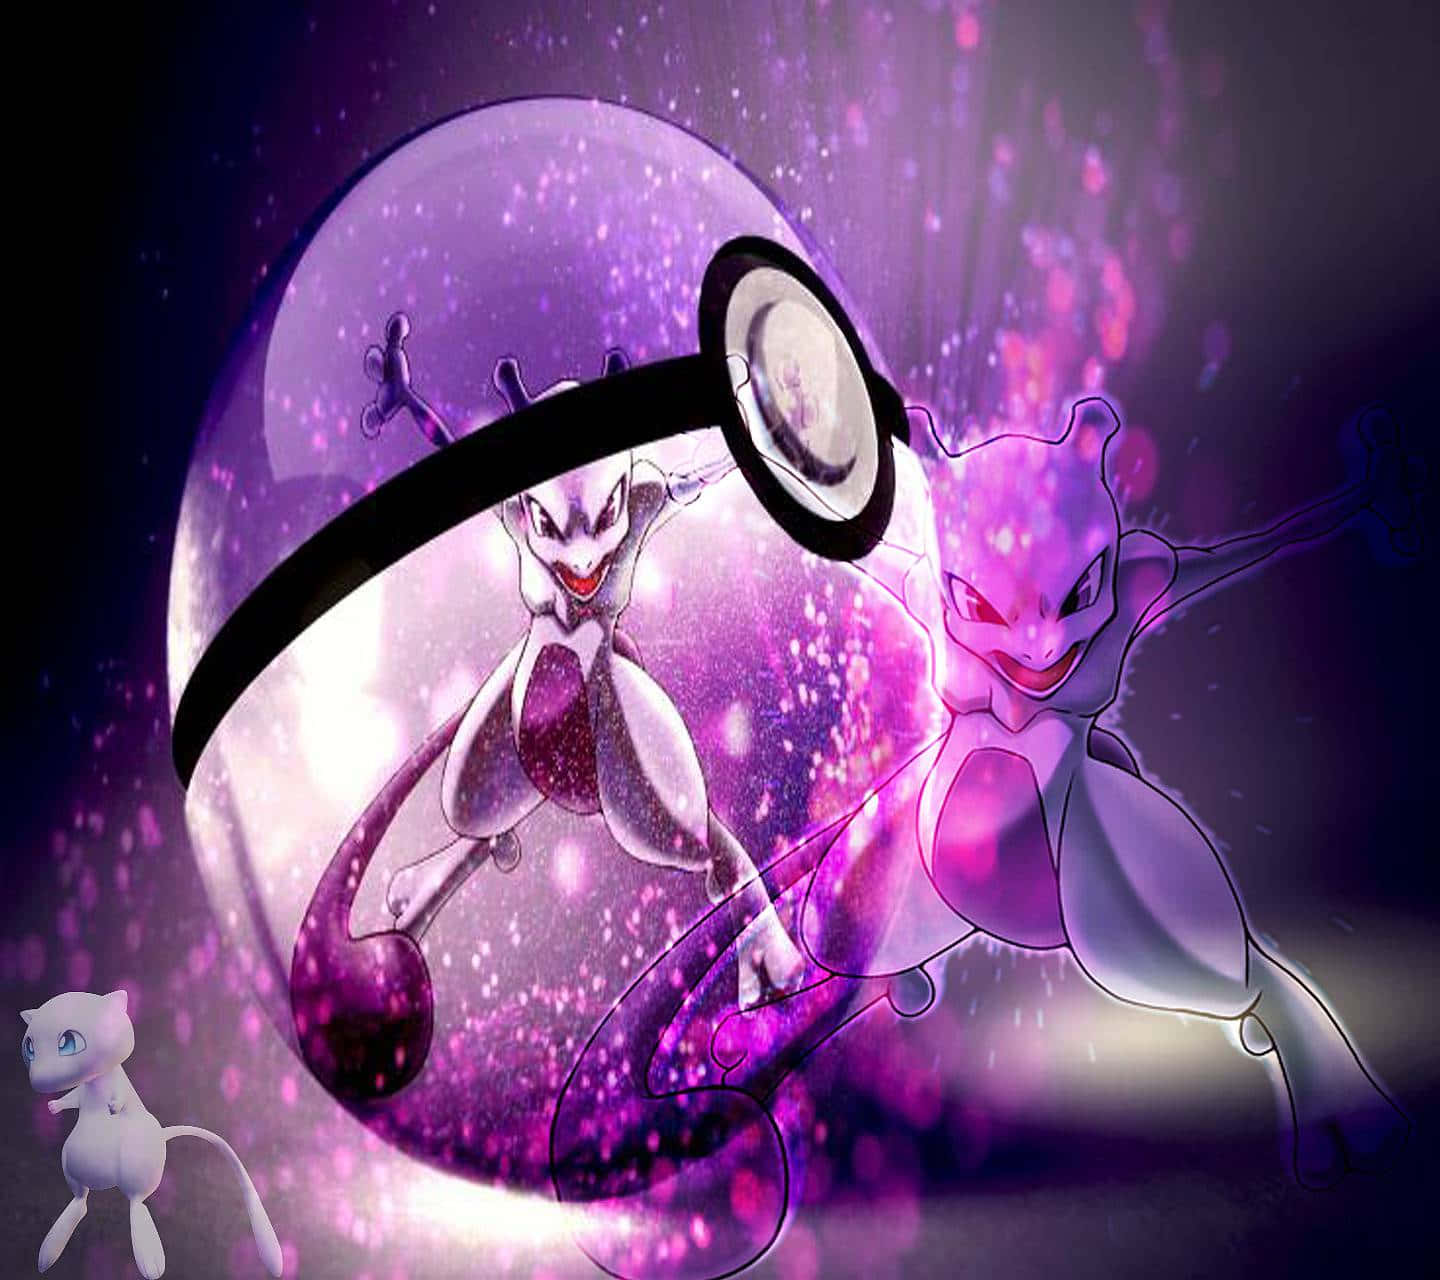 Denmäktiga Pokémonen Mewtwo Reser Sig Högt Över En Storm Av Psykisk Energi.